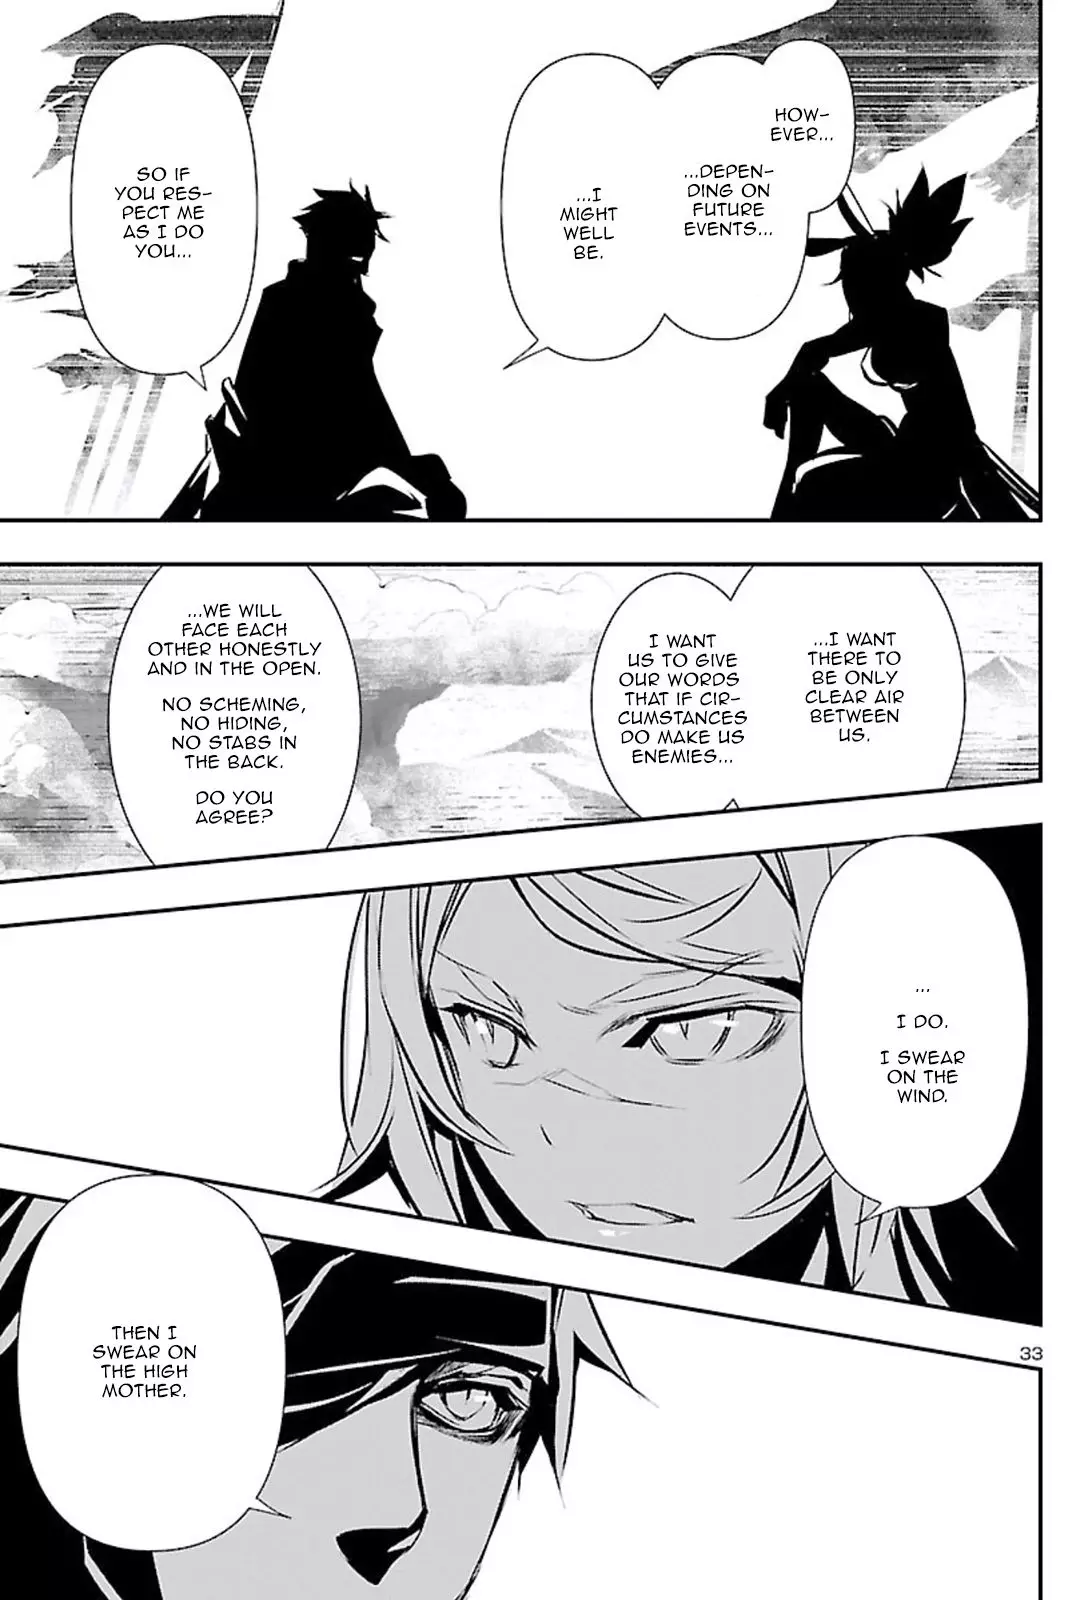 Shinju no Nectar - 49 page 33